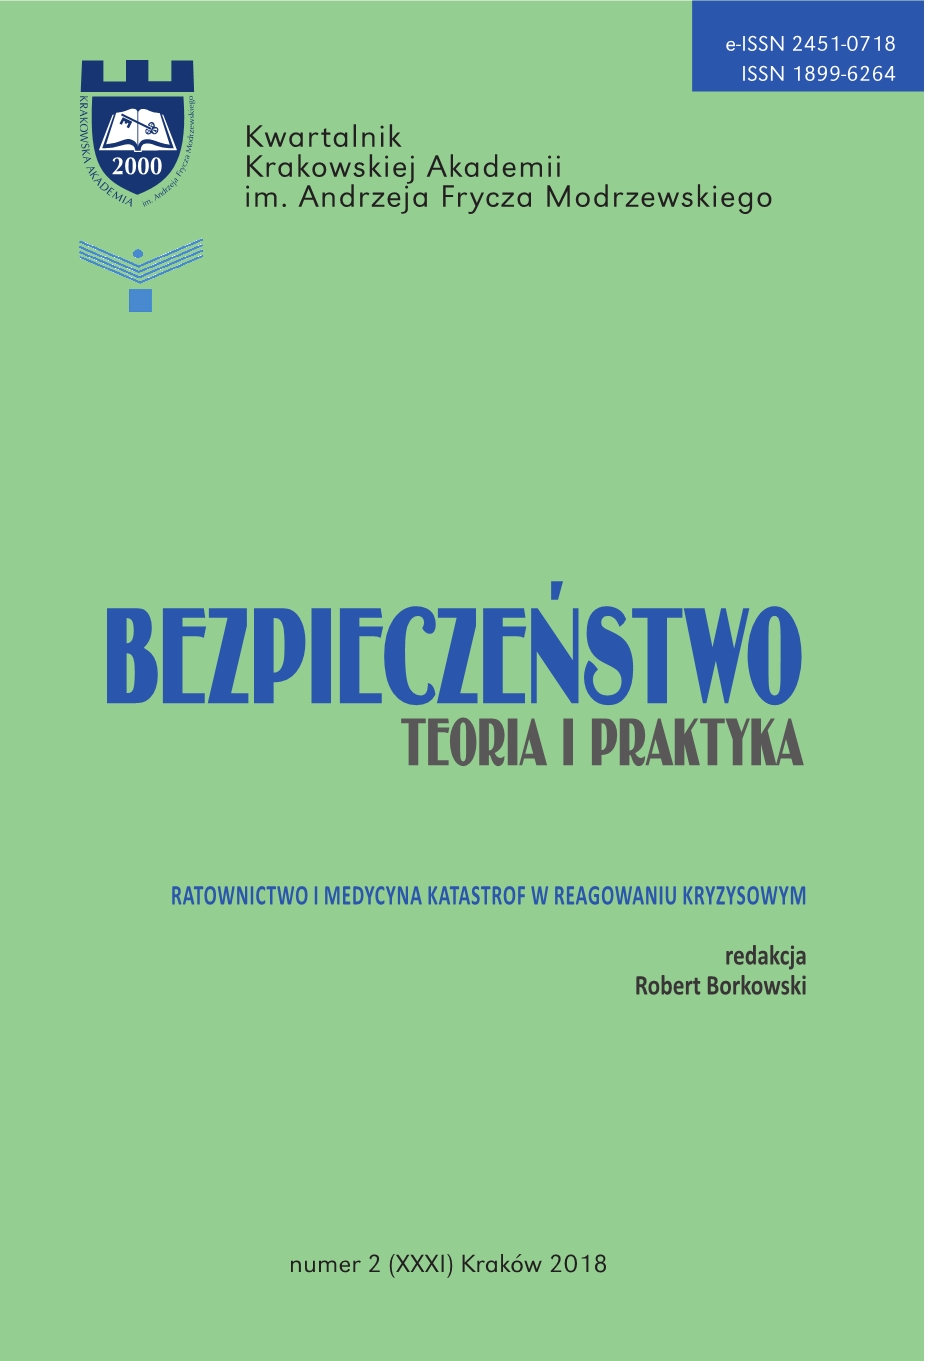 Stanisław J. Rysz, Ostrzeganie, alarmowanie, powiadamianie ratunkowe - book review Cover Image